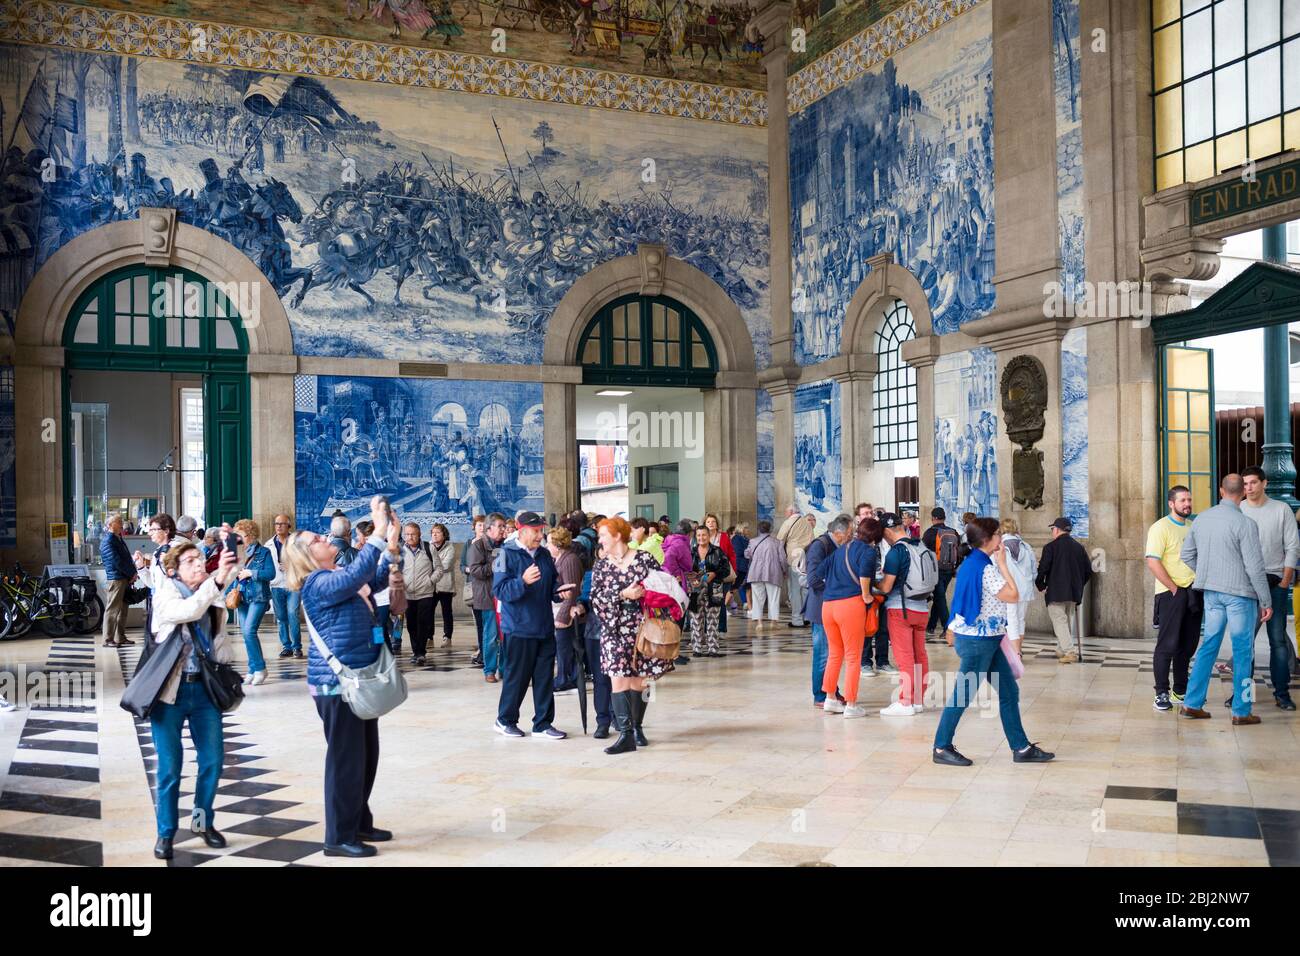 Turistas fotografiando famosos azulejos tradicionales portugueses azulejos de pared azul y blanco Sao Bento estación de tren en Oporto, Portugal Foto de stock